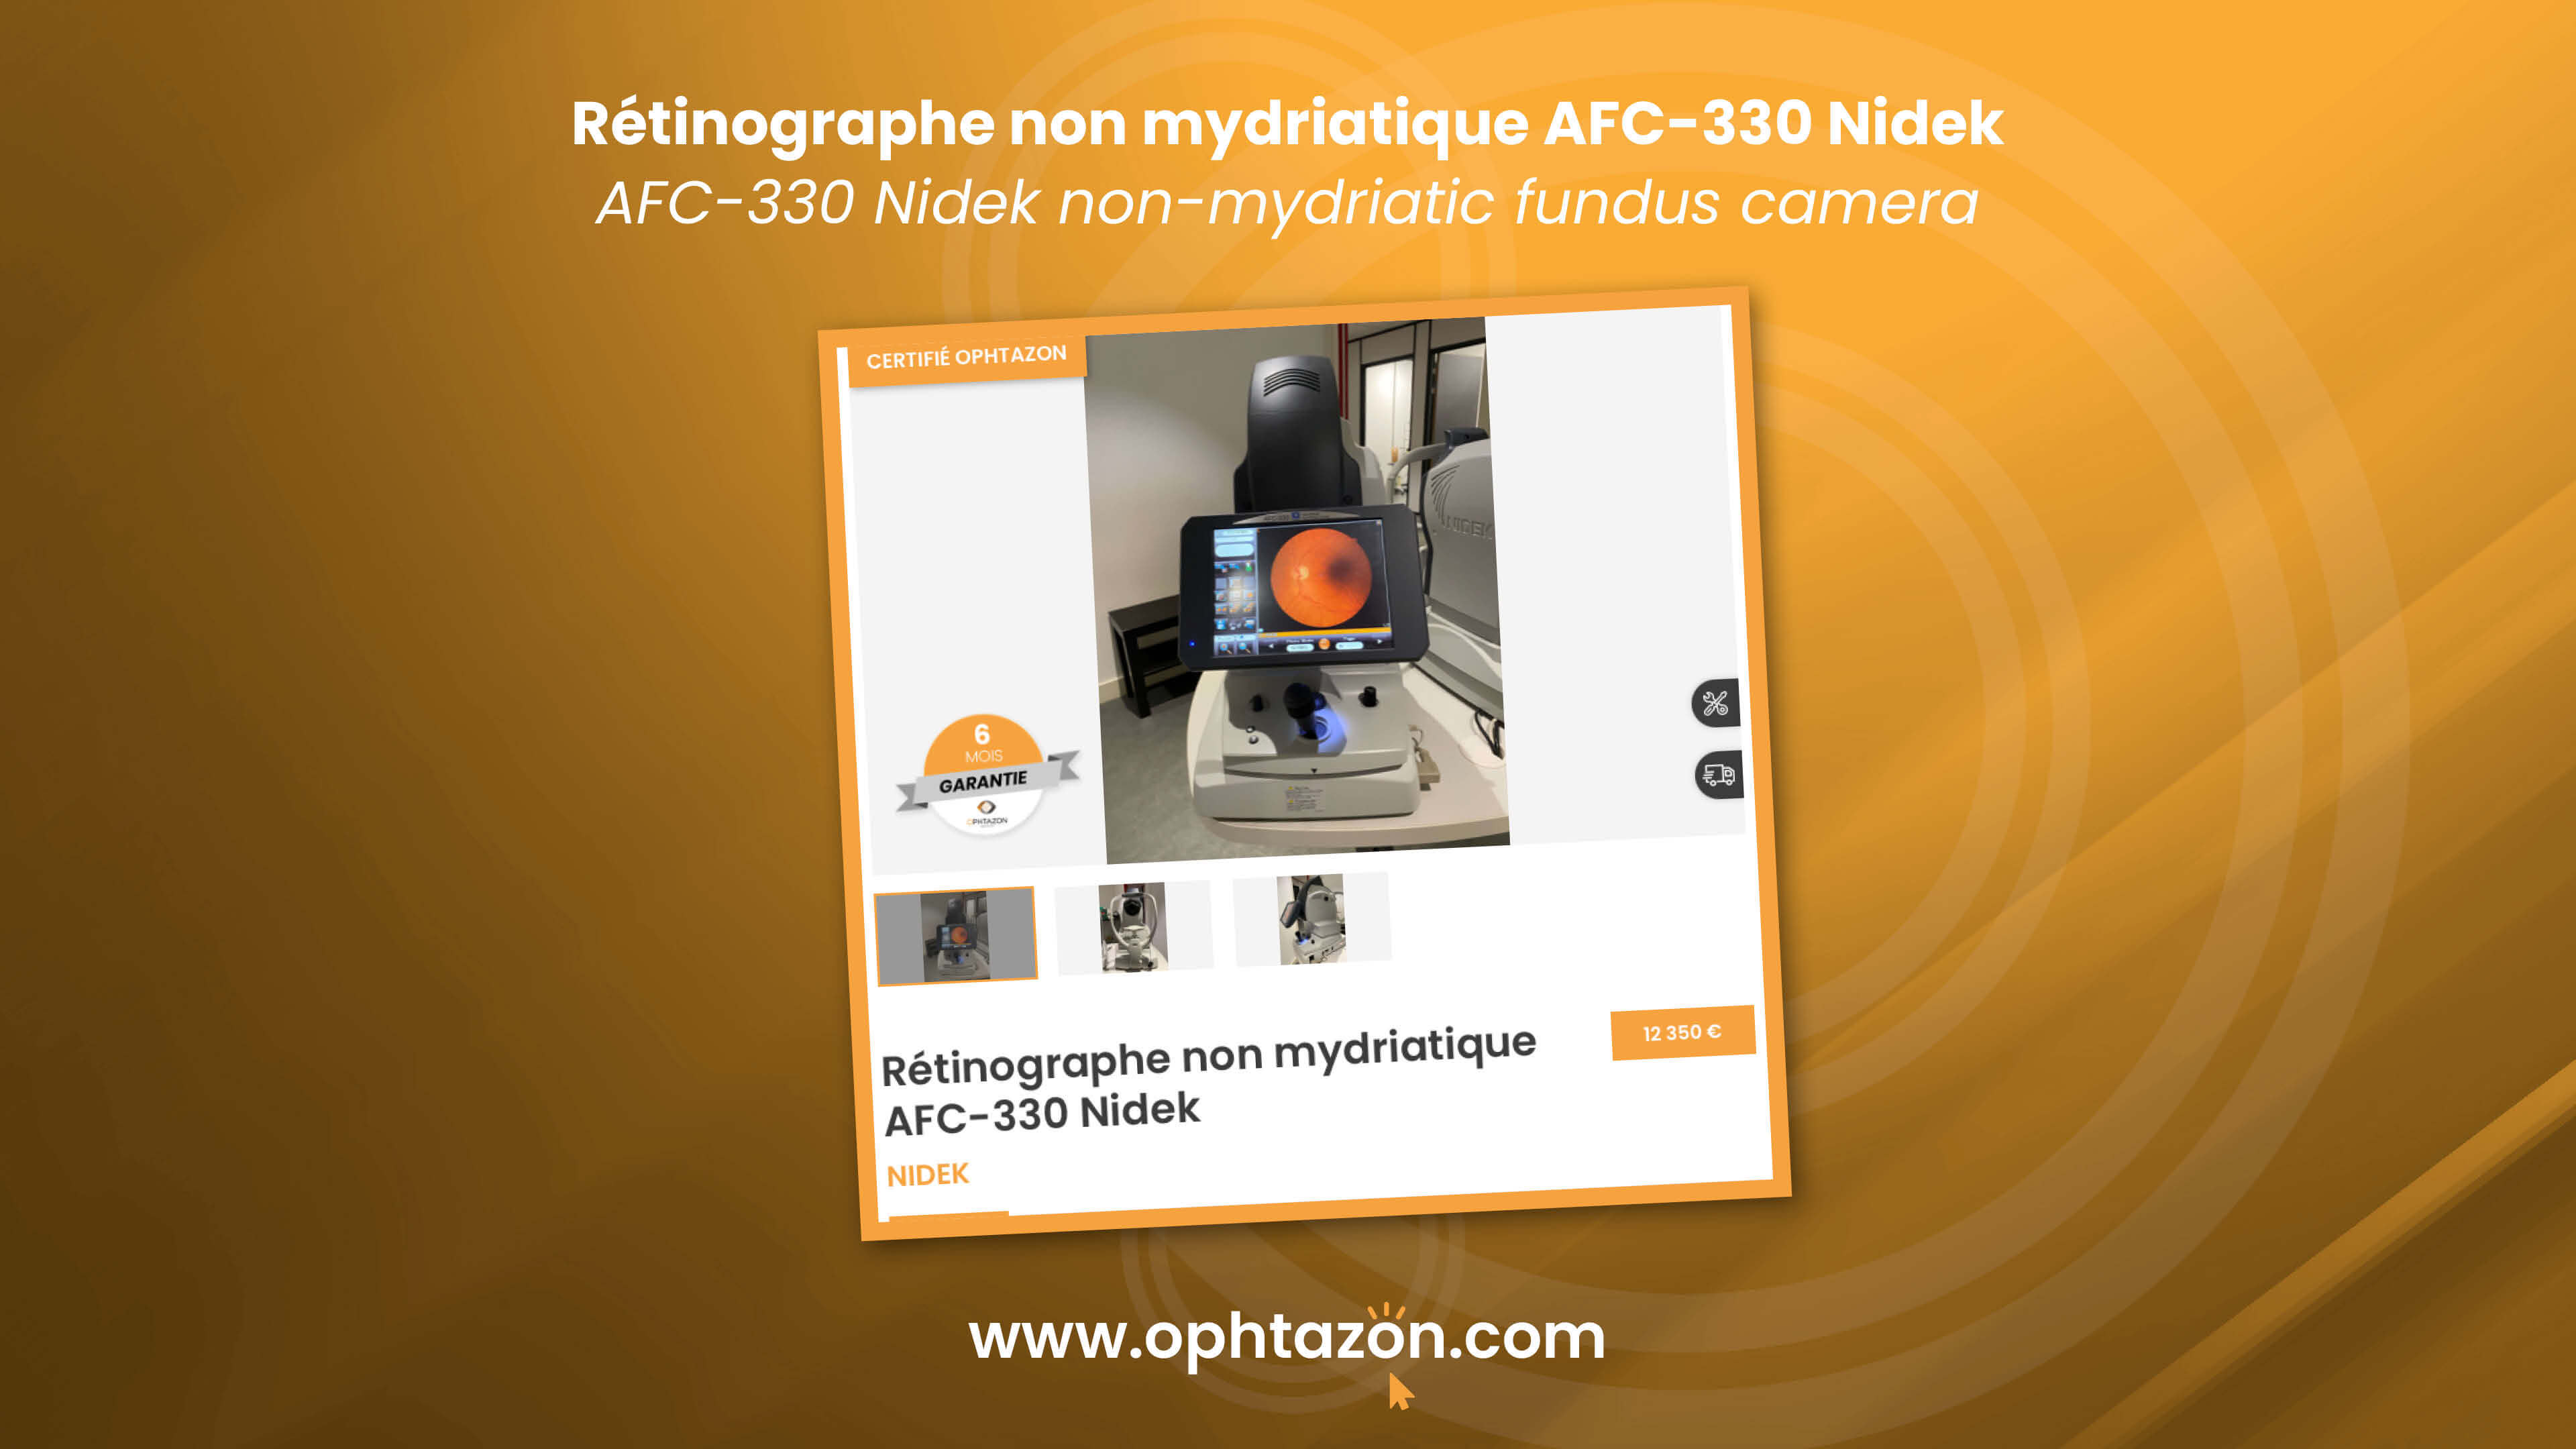 Le rétinographe non mydriatique AFC-330 Nidek est disponible chez OPHTAZON